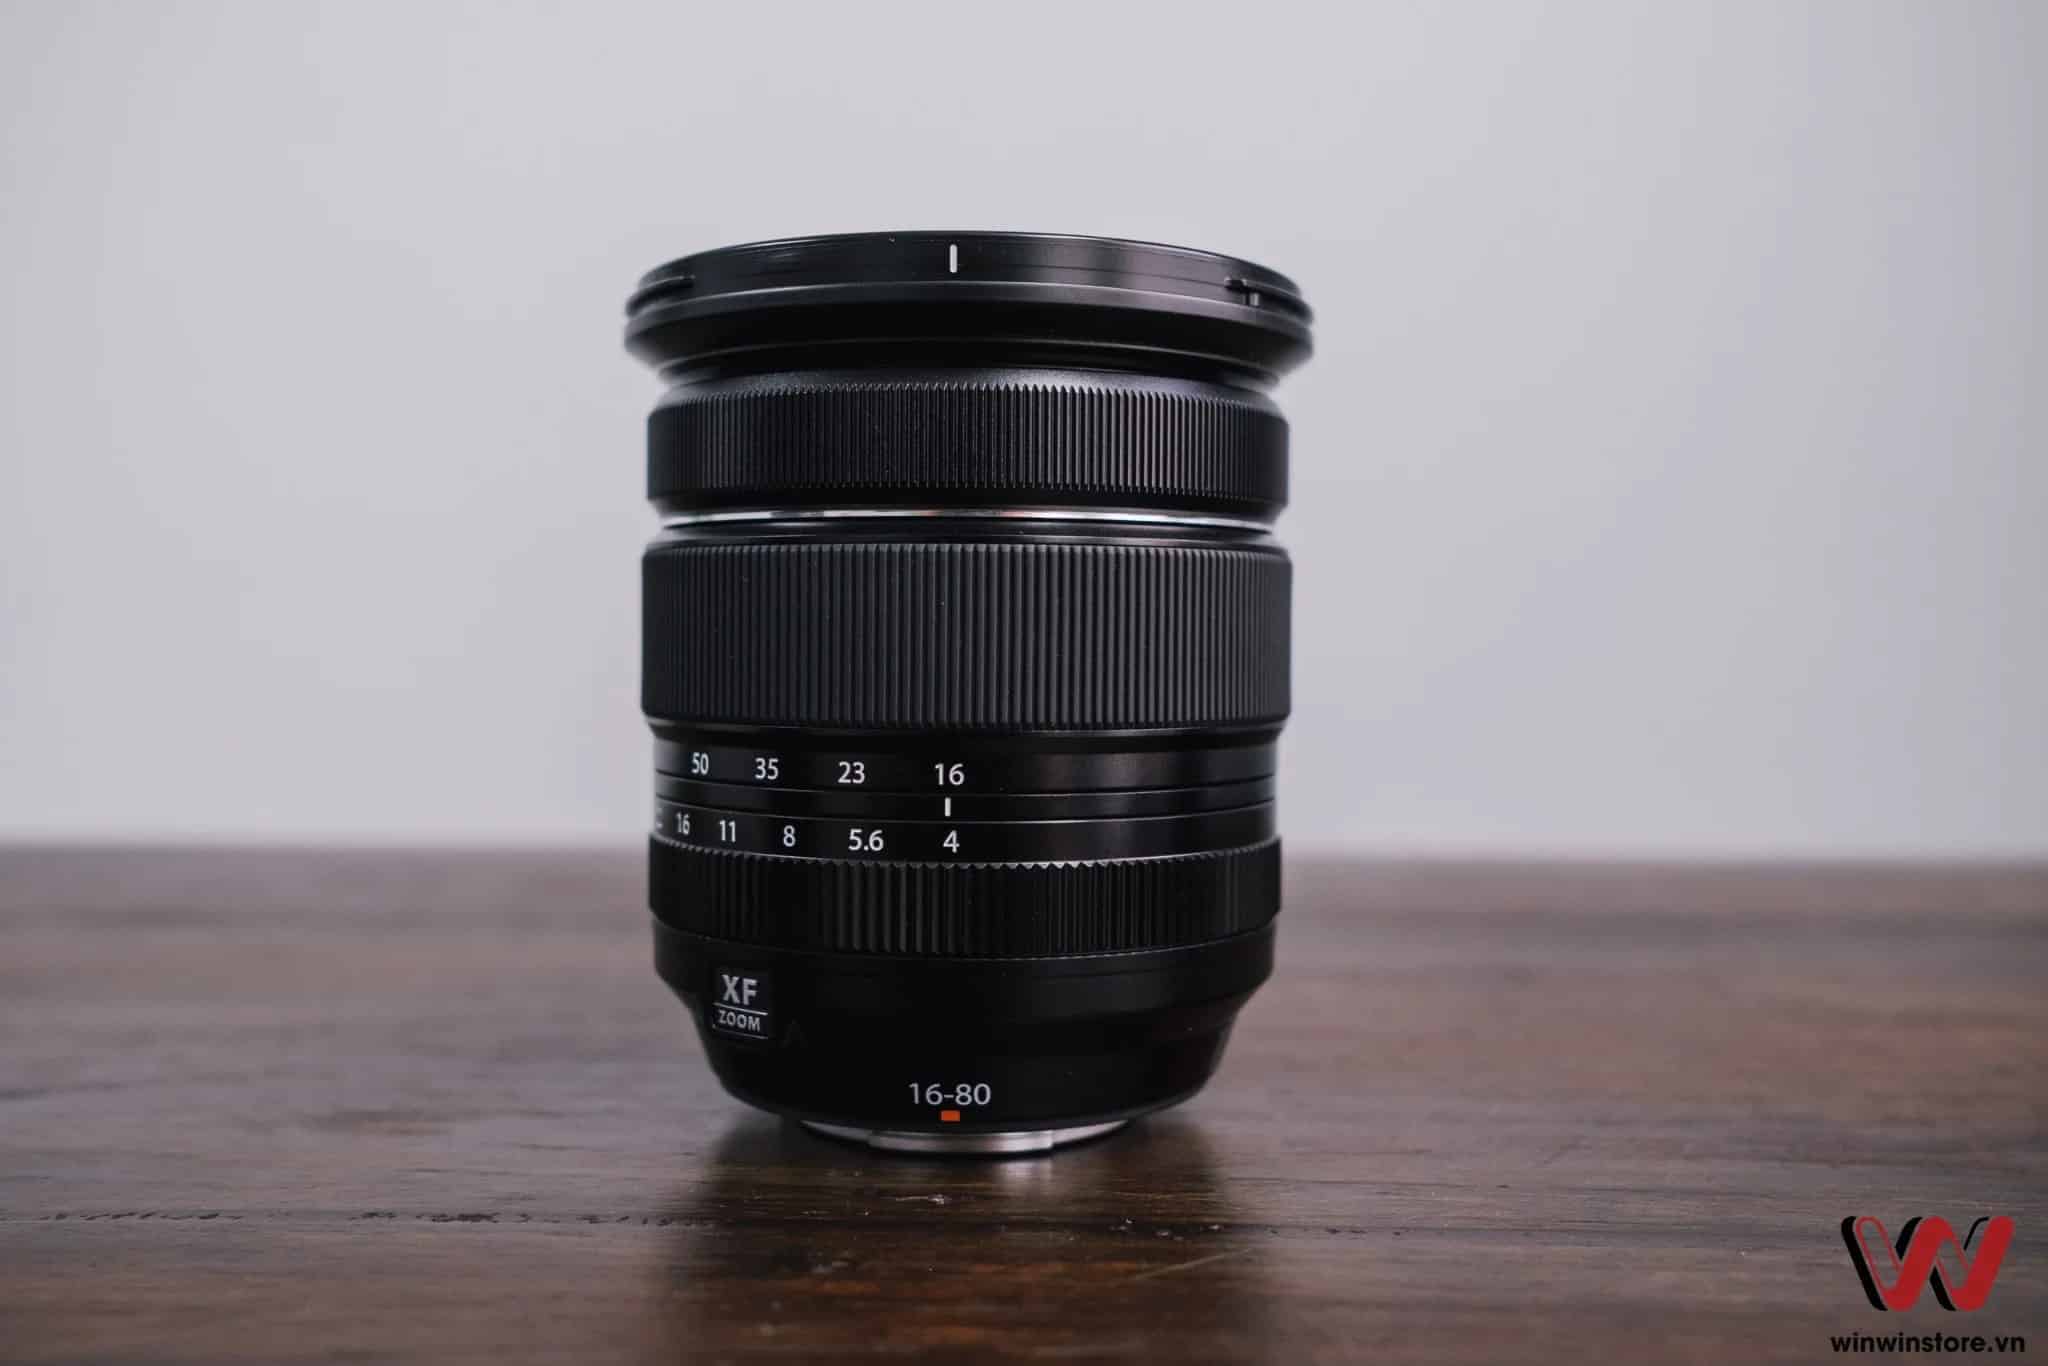 Ống kính Fujifilm XF 16-80mm F4 là lens đa dụng dành cho người chơi ảnh